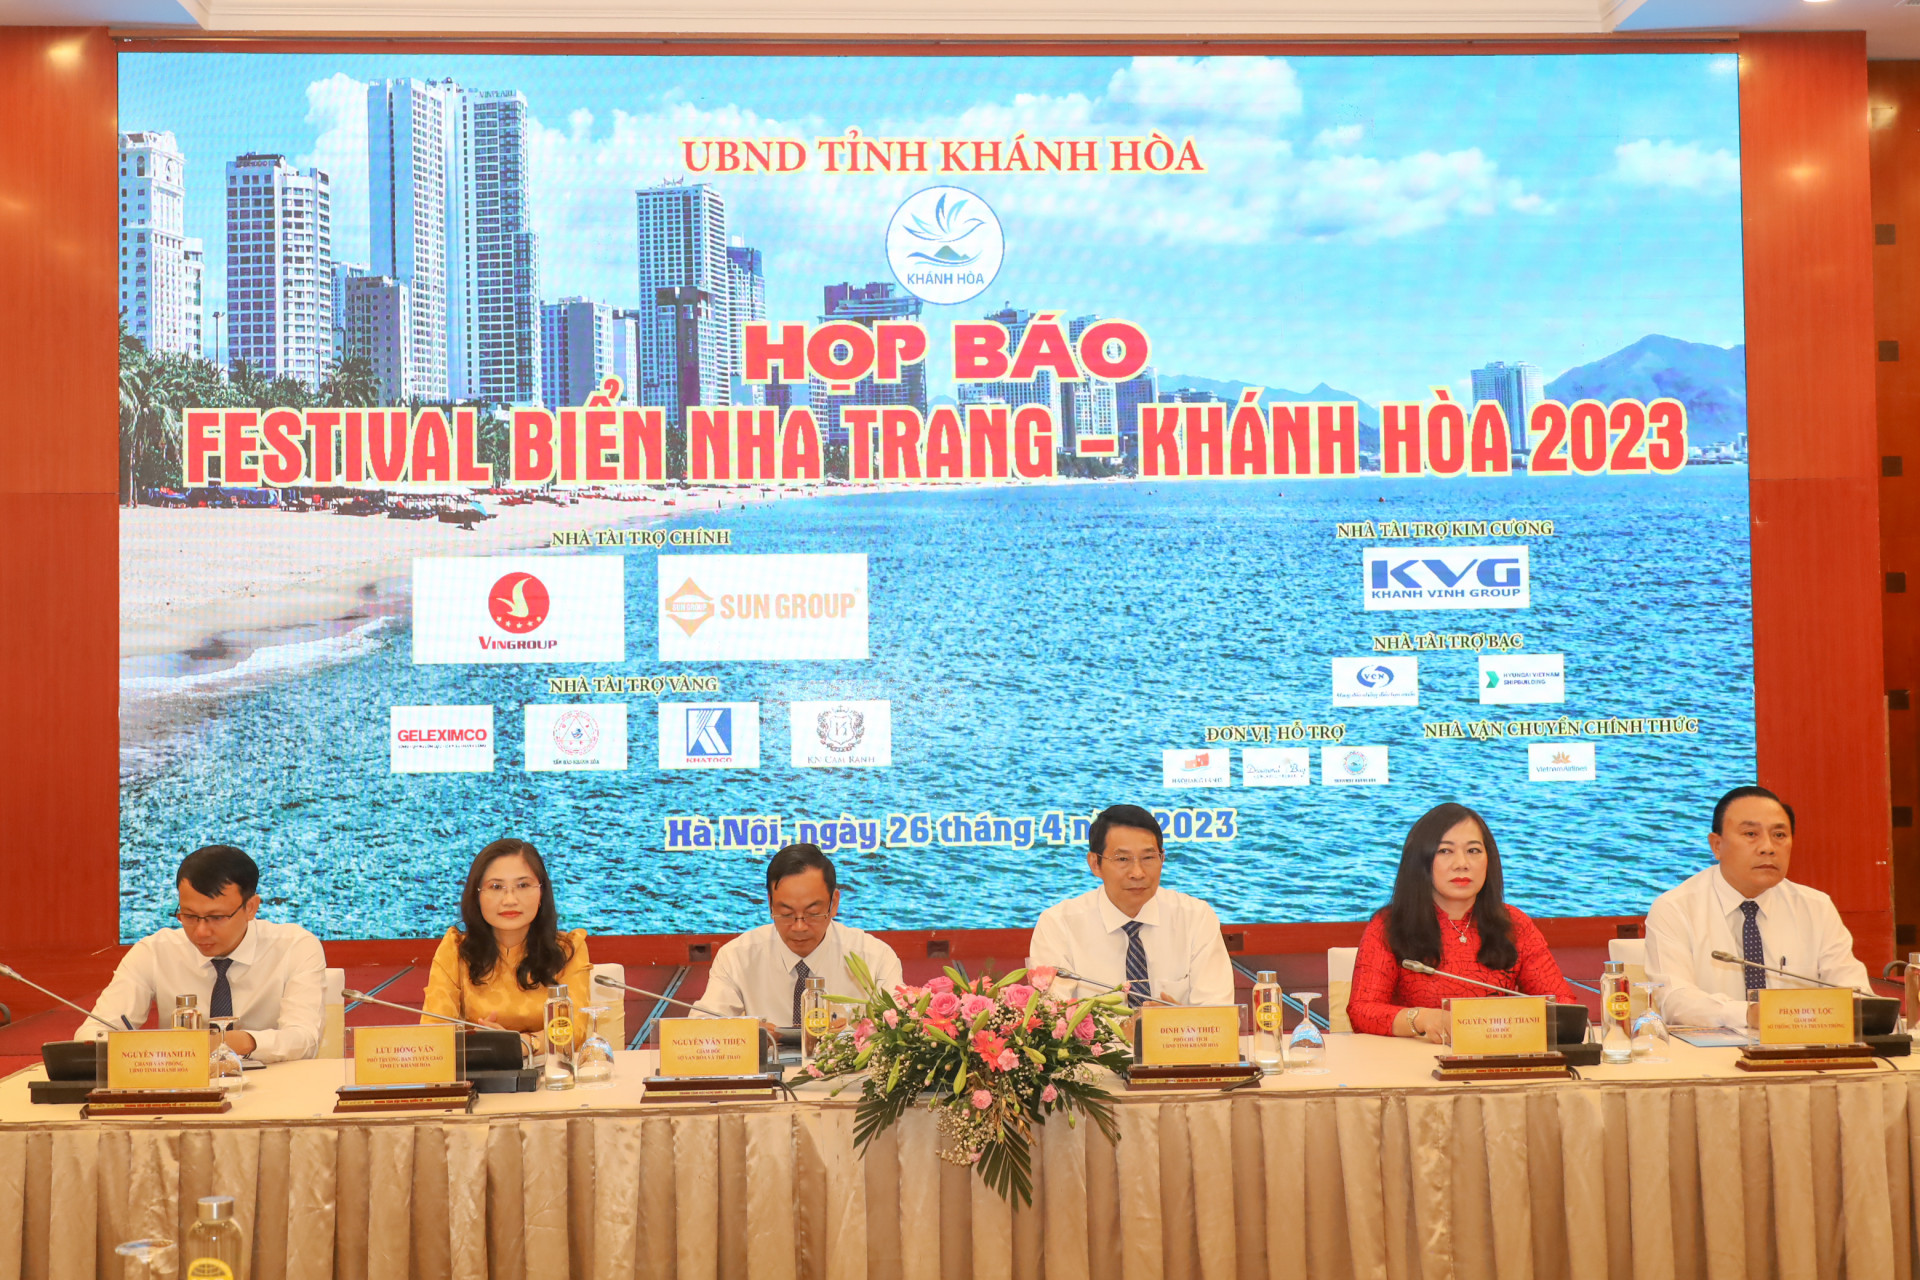 Lãnh đạo UBND tỉnh và các sở, ban, ngành chủ trì buổi họp báo giới thiệu về Festival Biển 2023 tại Thủ đô Hà Nội.